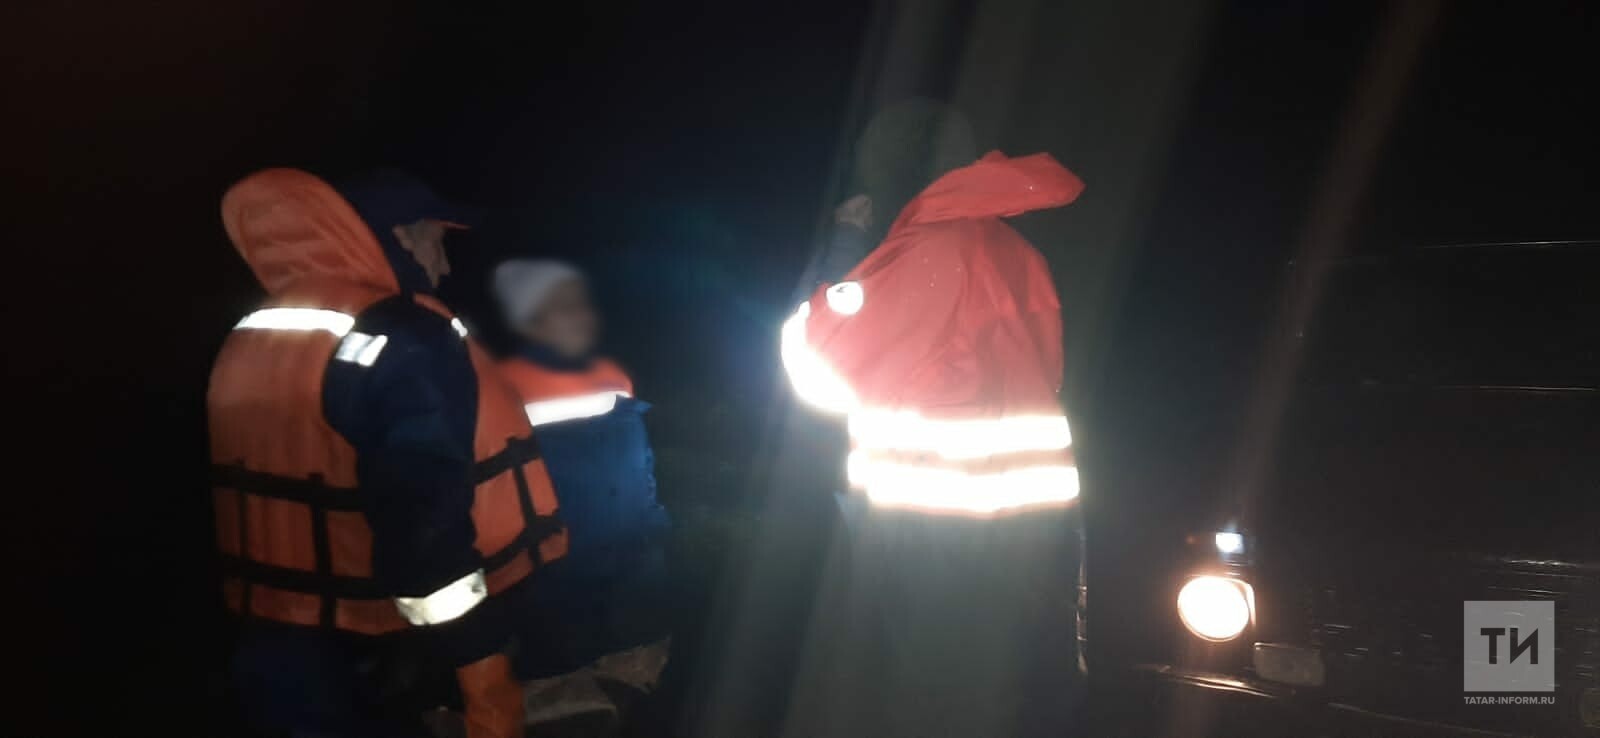 За день спасатели помогли семерым рыбакам, заблудившимся на реке Ик в Татарстане